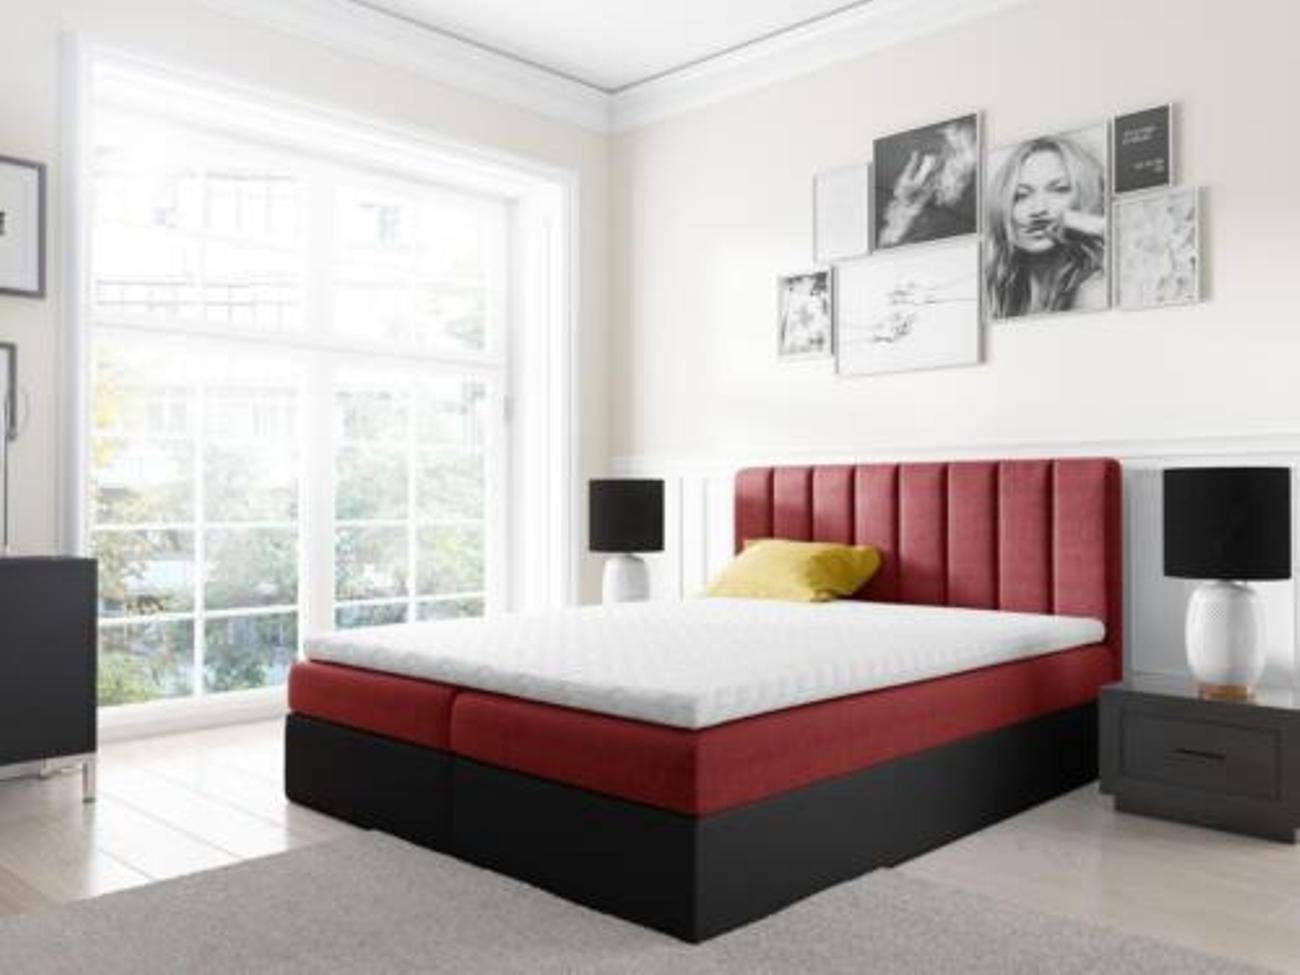 JVmoebel Bett, Boxspringbett Doppelbett Bett mit Bettkasten Ehebett Betten 180cm Rot